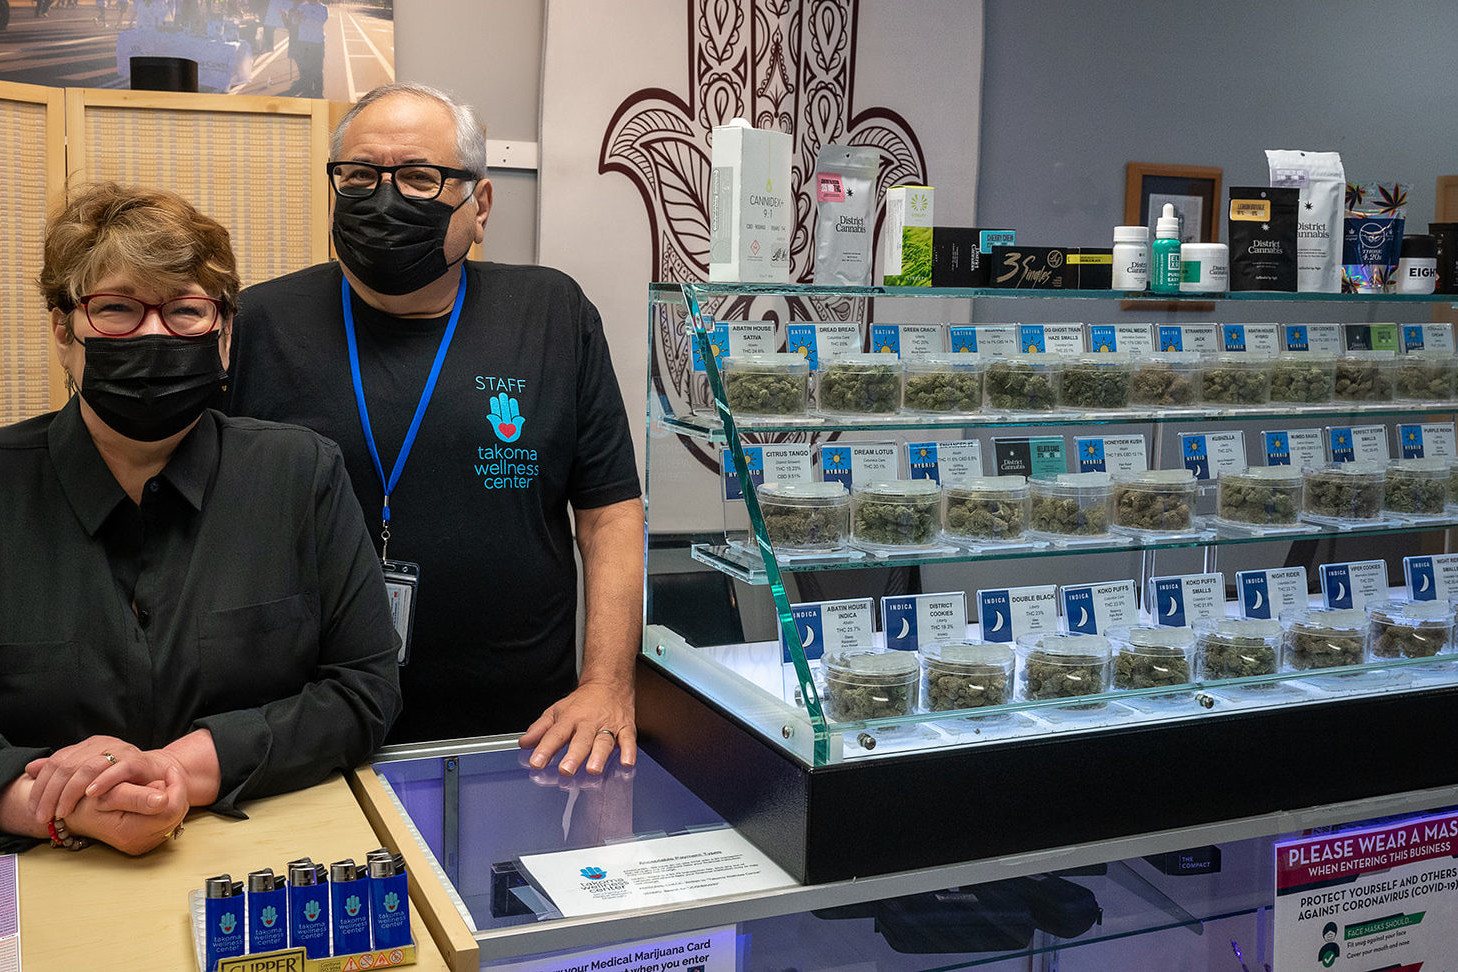 Stephanie & Rabbi Jeffery Kahn next to cannabis display inside Takoma Wellness center